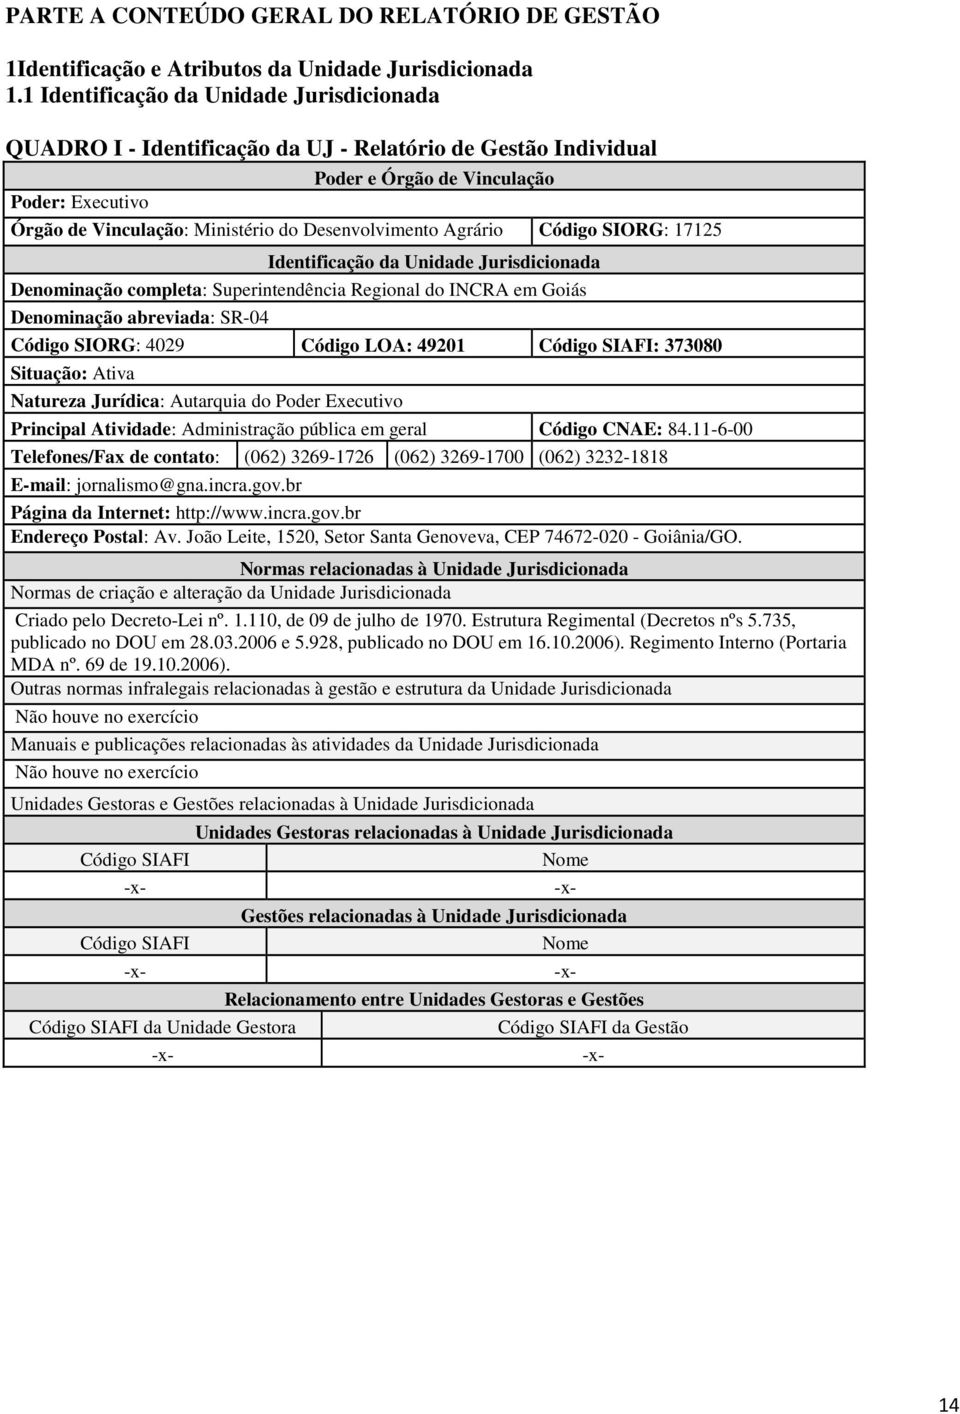 Desenvolvimento Agrário Código SIORG: 17125 Identificação da Unidade Jurisdicionada Denominação completa: Superintendência Regional do INCRA em Goiás Denominação abreviada: SR-04 Código SIORG: 4029